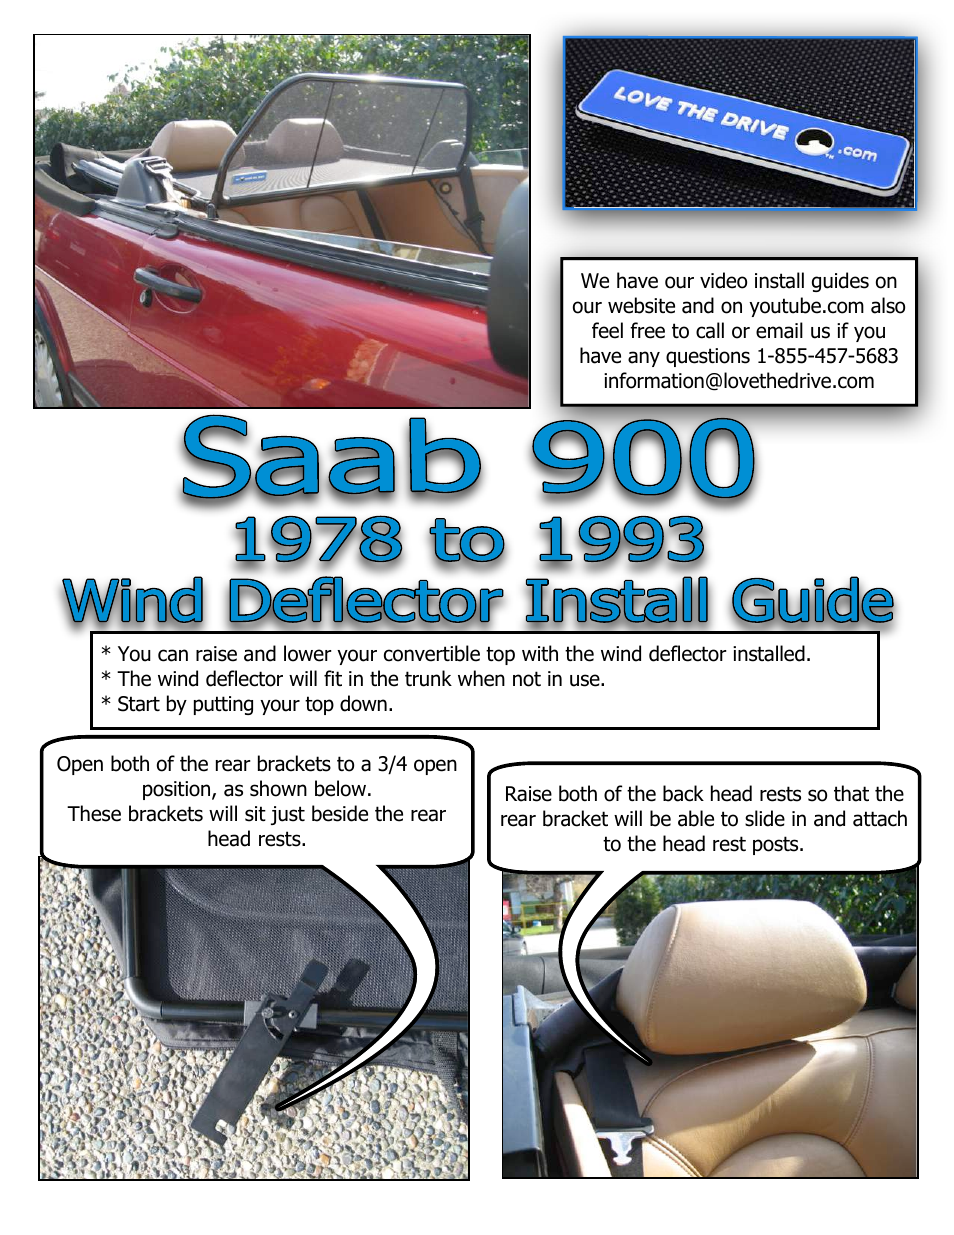 Saab 900 Wind Deflector 1987 to 1993